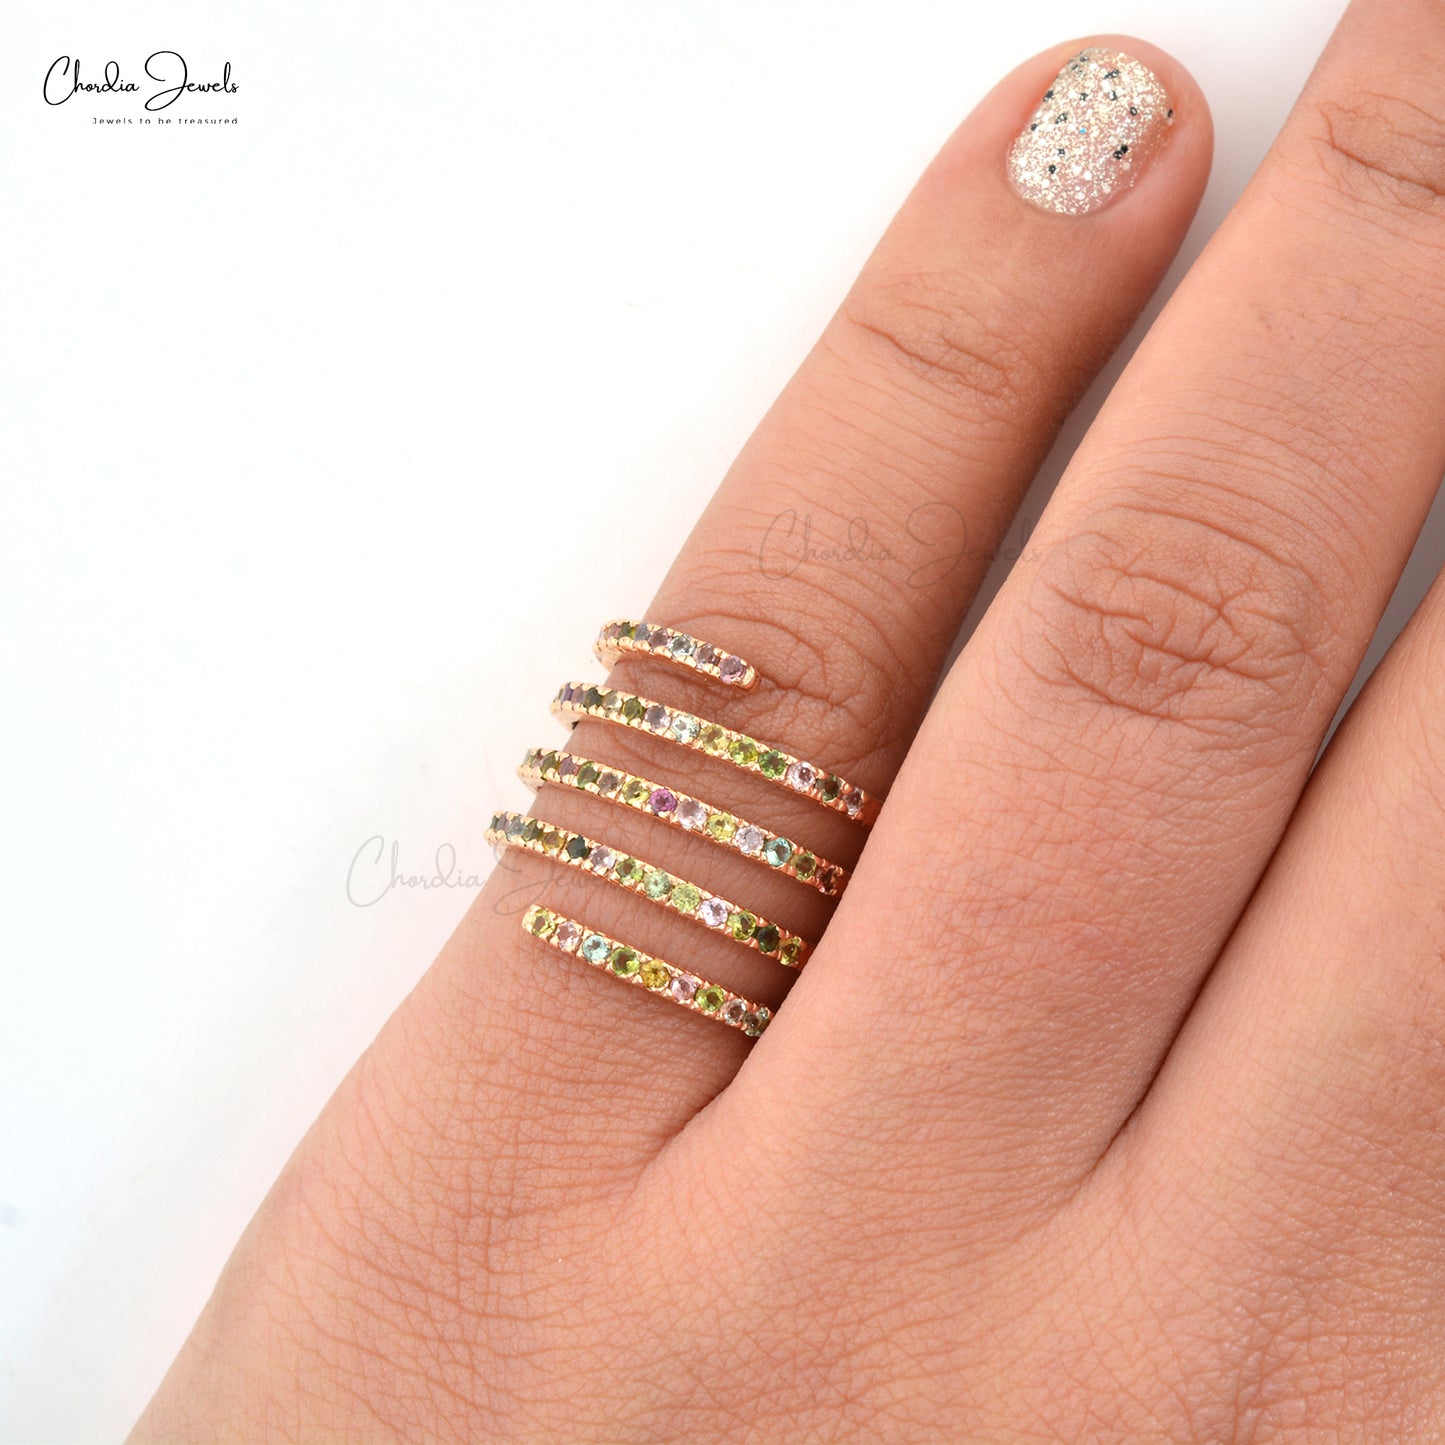 Buy Tourmaline Rings OnlineStunning Spiral Ring With Genuine Multi-Tourmaline Hallmarked 14k Rose Gold Wedding Ring